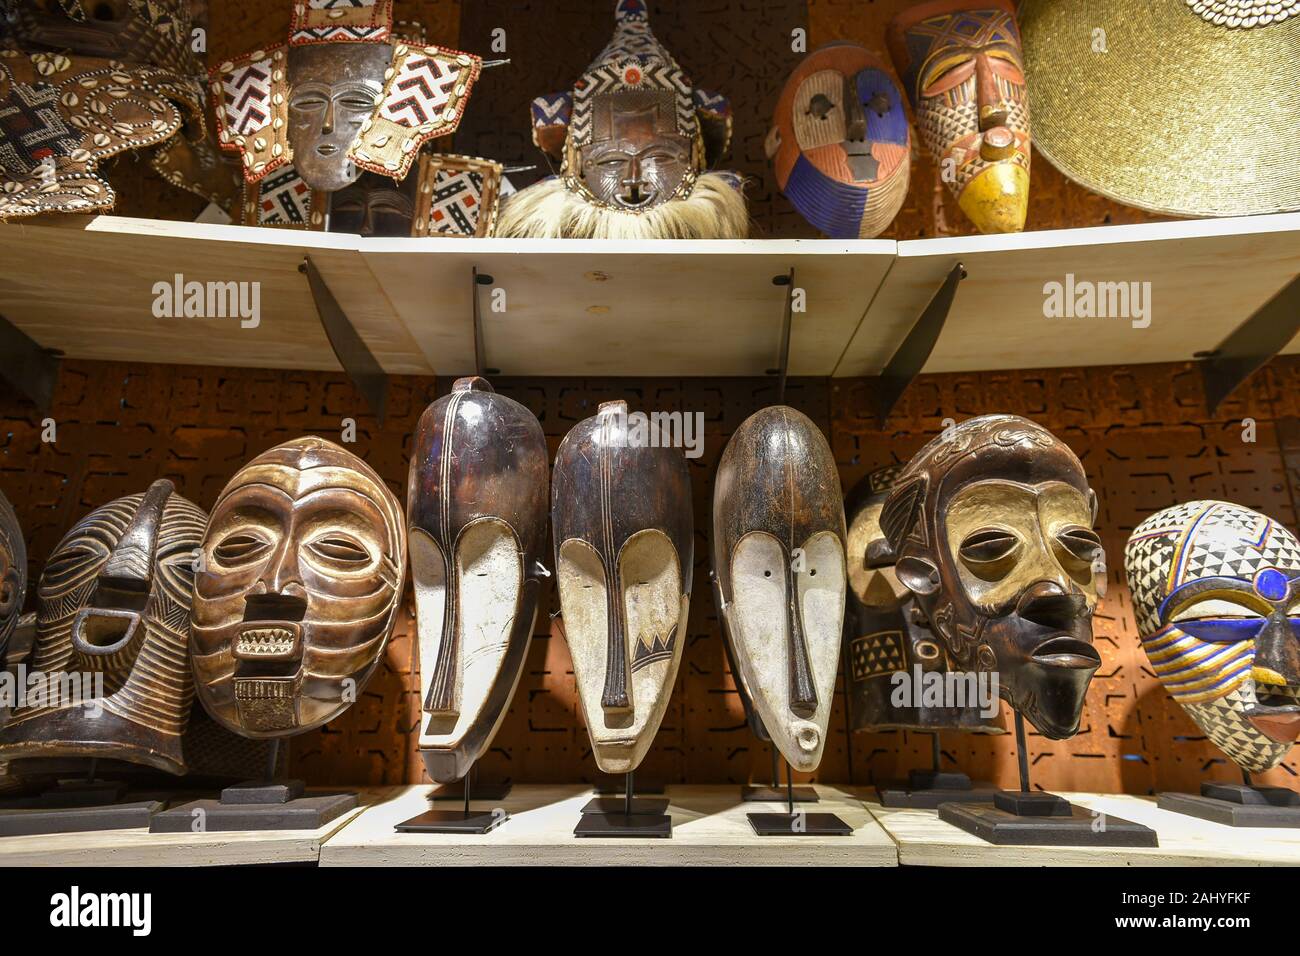 Masques africains en bois fabriqués à la main, Johannesburg, Afrique du Sud Banque D'Images